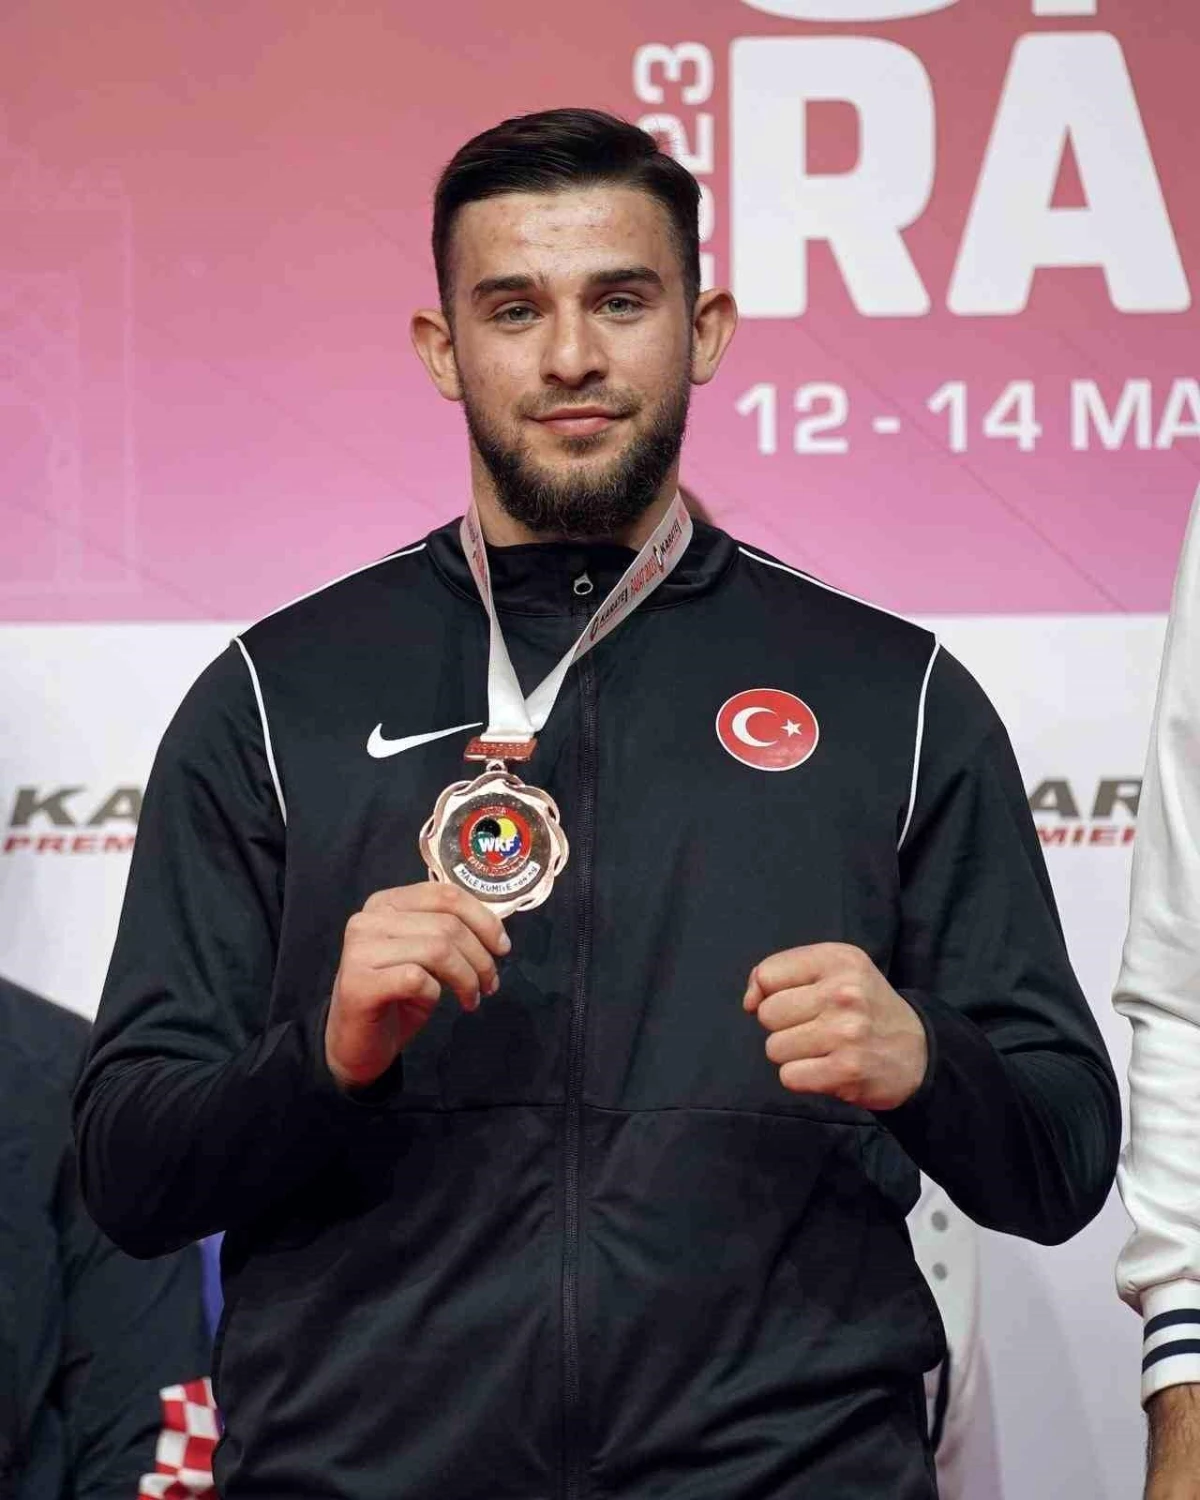 Sakarya Büyükşehir Belediyesi Karate Sporcusu Fasta\'da Üçüncülük Elde Etti